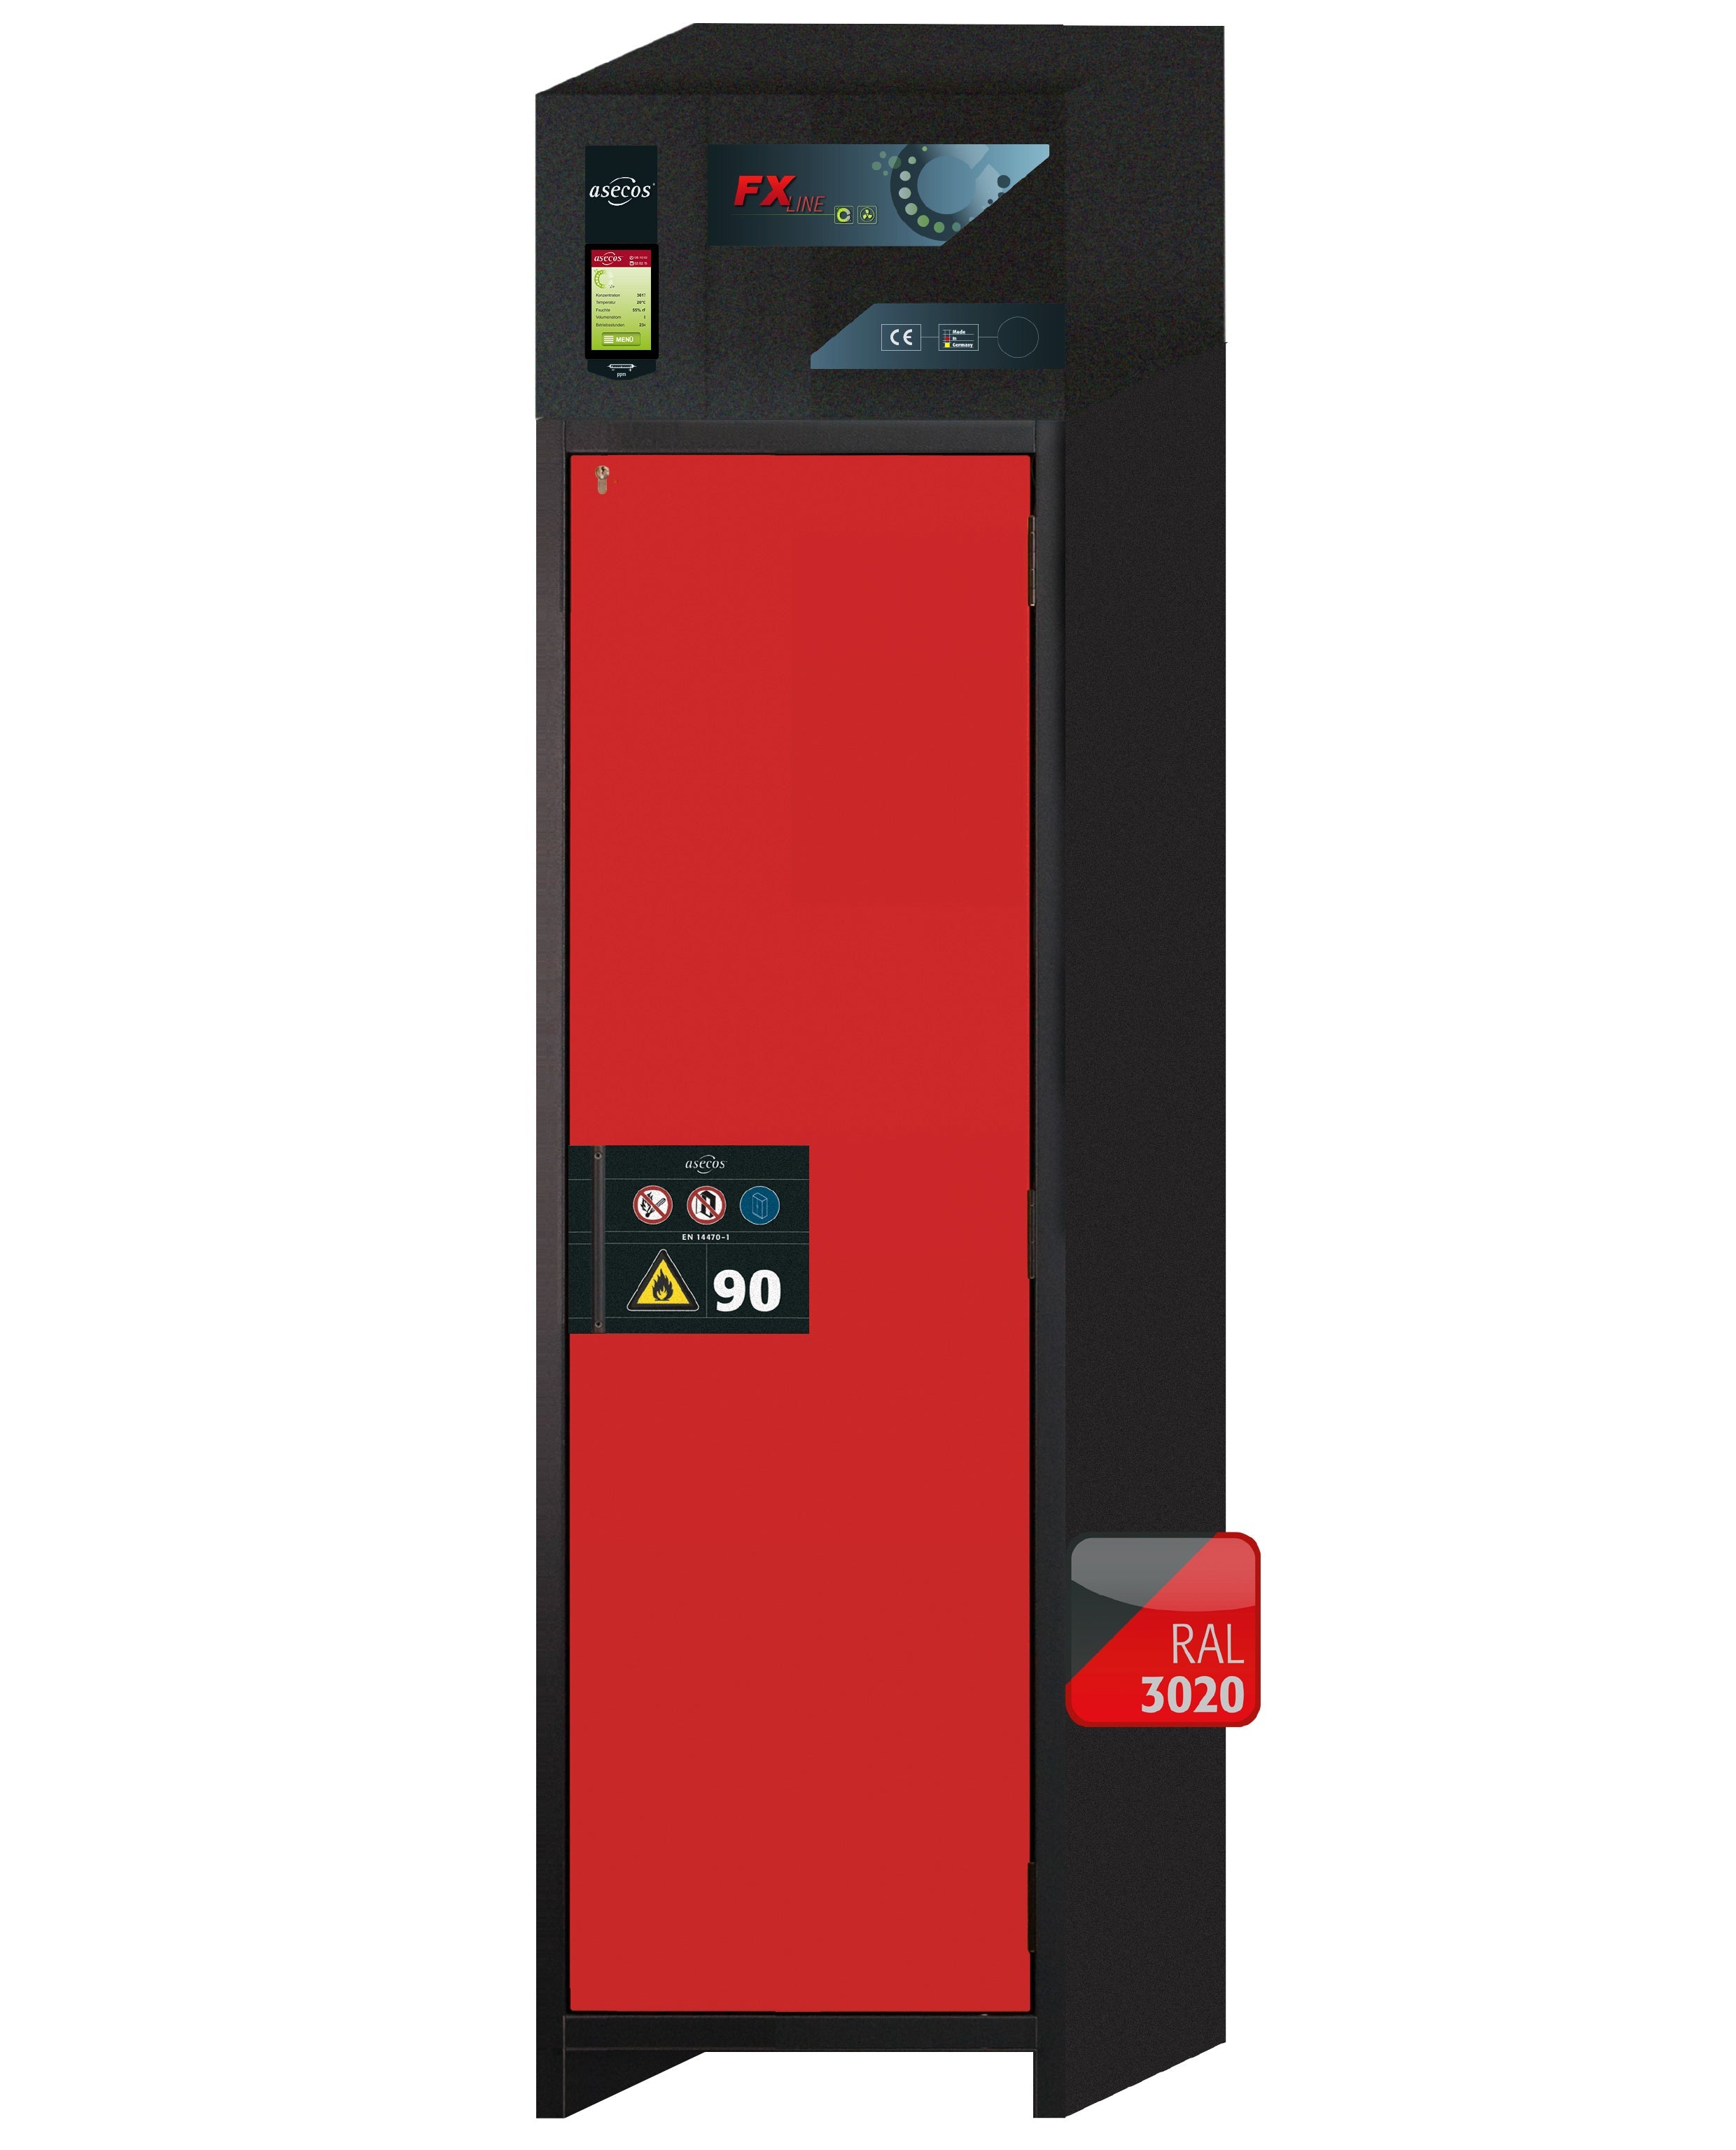 Armoire de filtration d'air recyclé type 90 FX-PEGASUS-90 modèle FX90.229.060.WDACR en rouge signalisation RAL 3020 avec 2 plateaux coulissants standard (tôle d'acier)